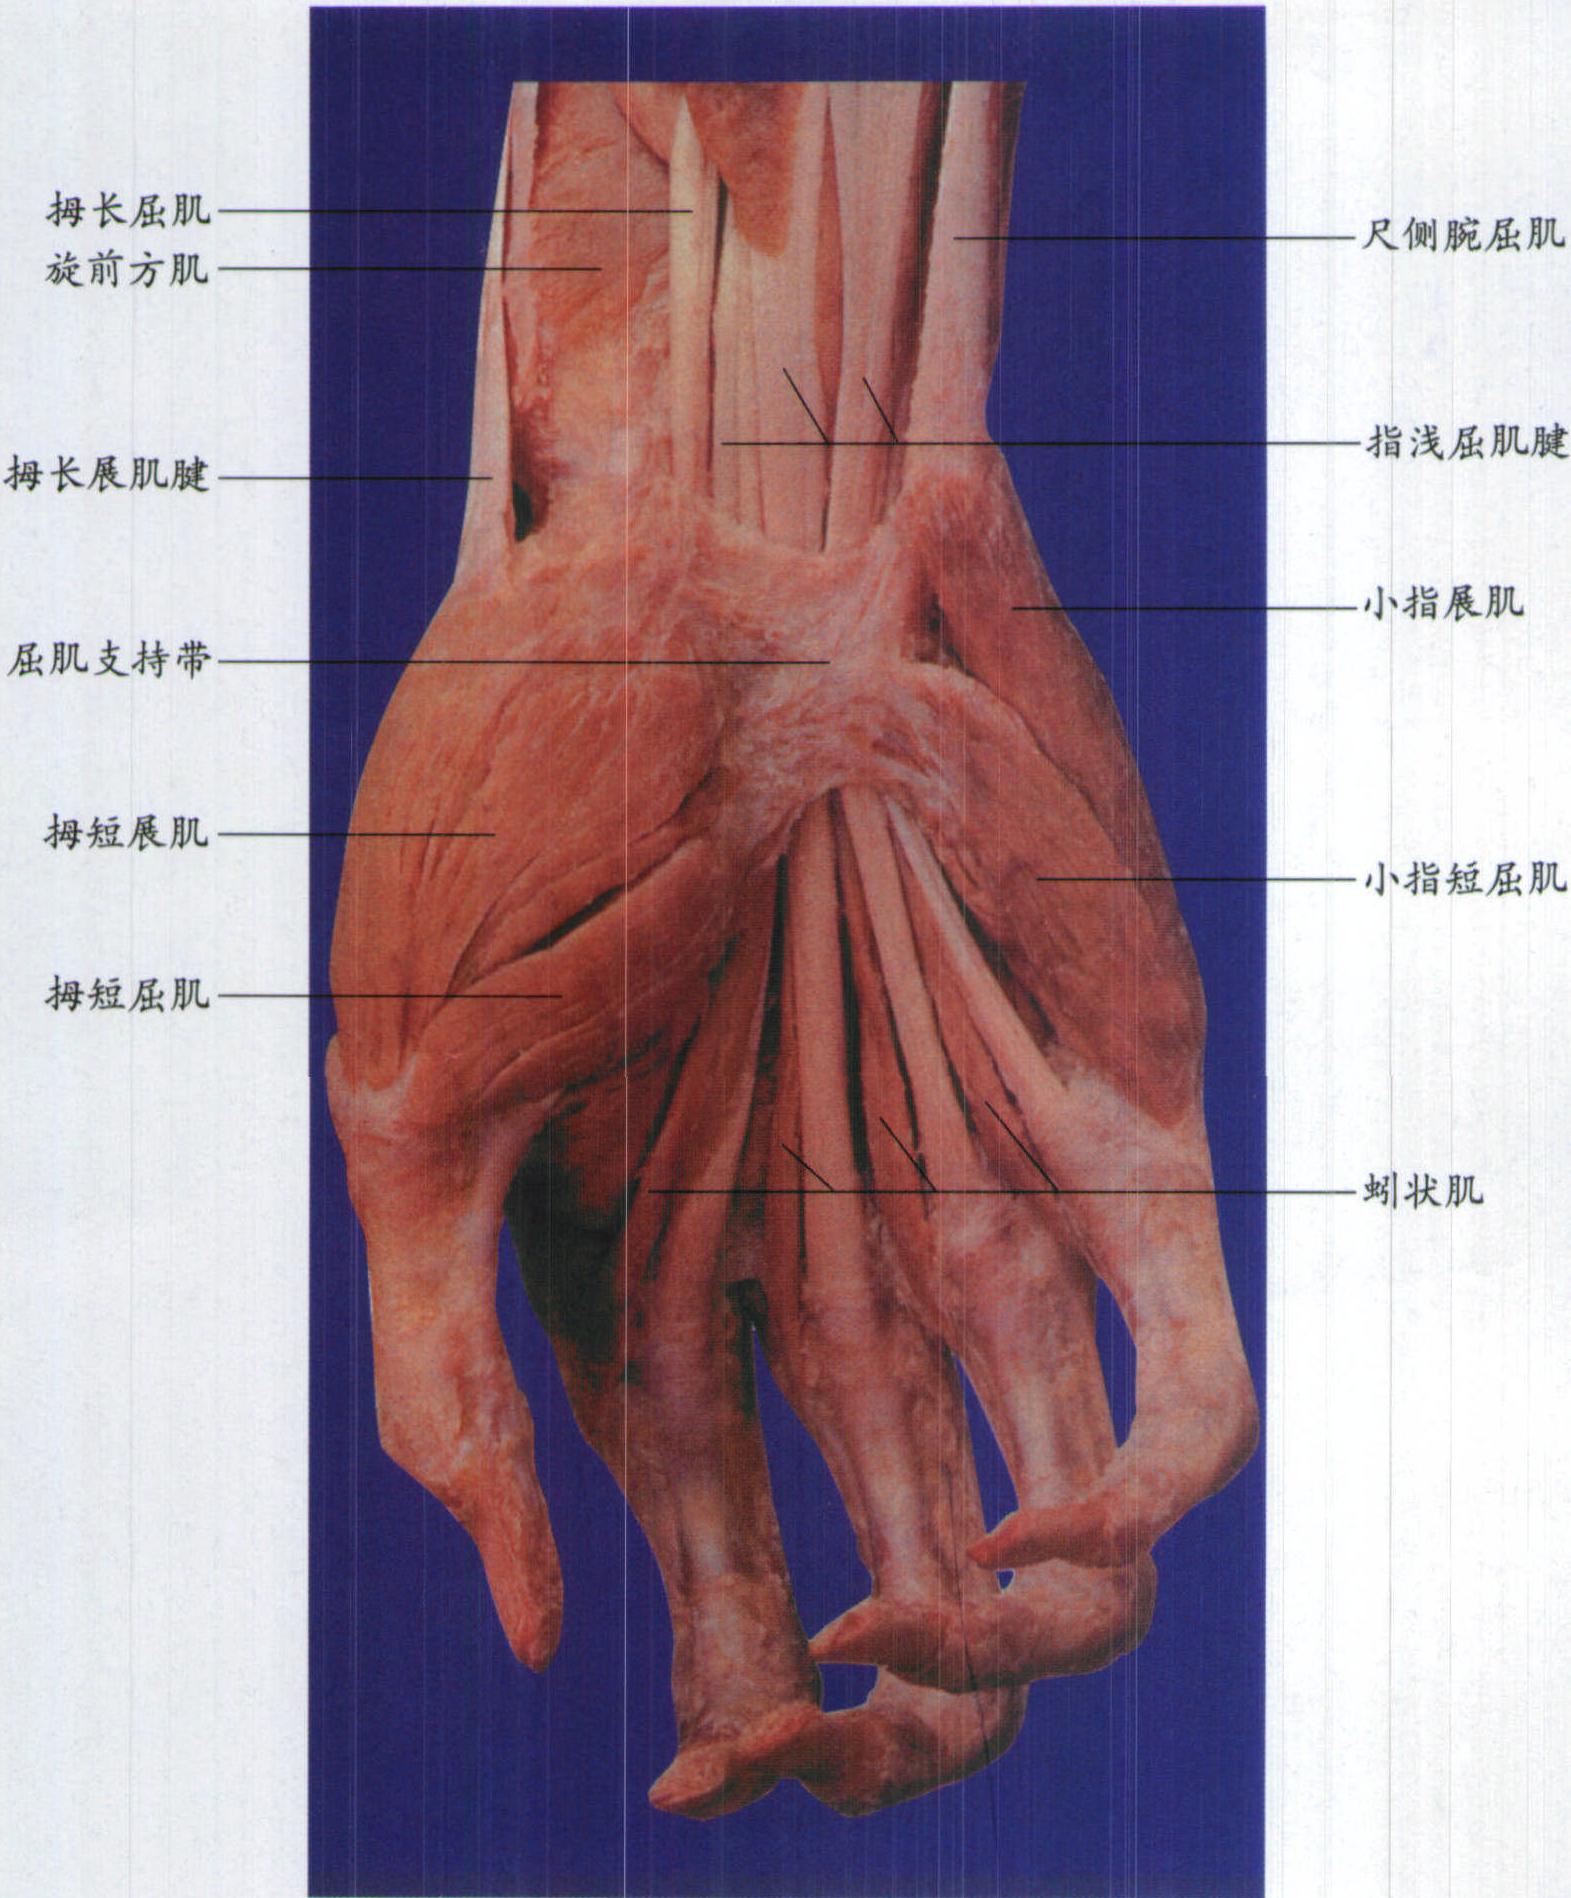 图7-24 手掌的肌肉、血管和神经(四)-临床解剖学-医学